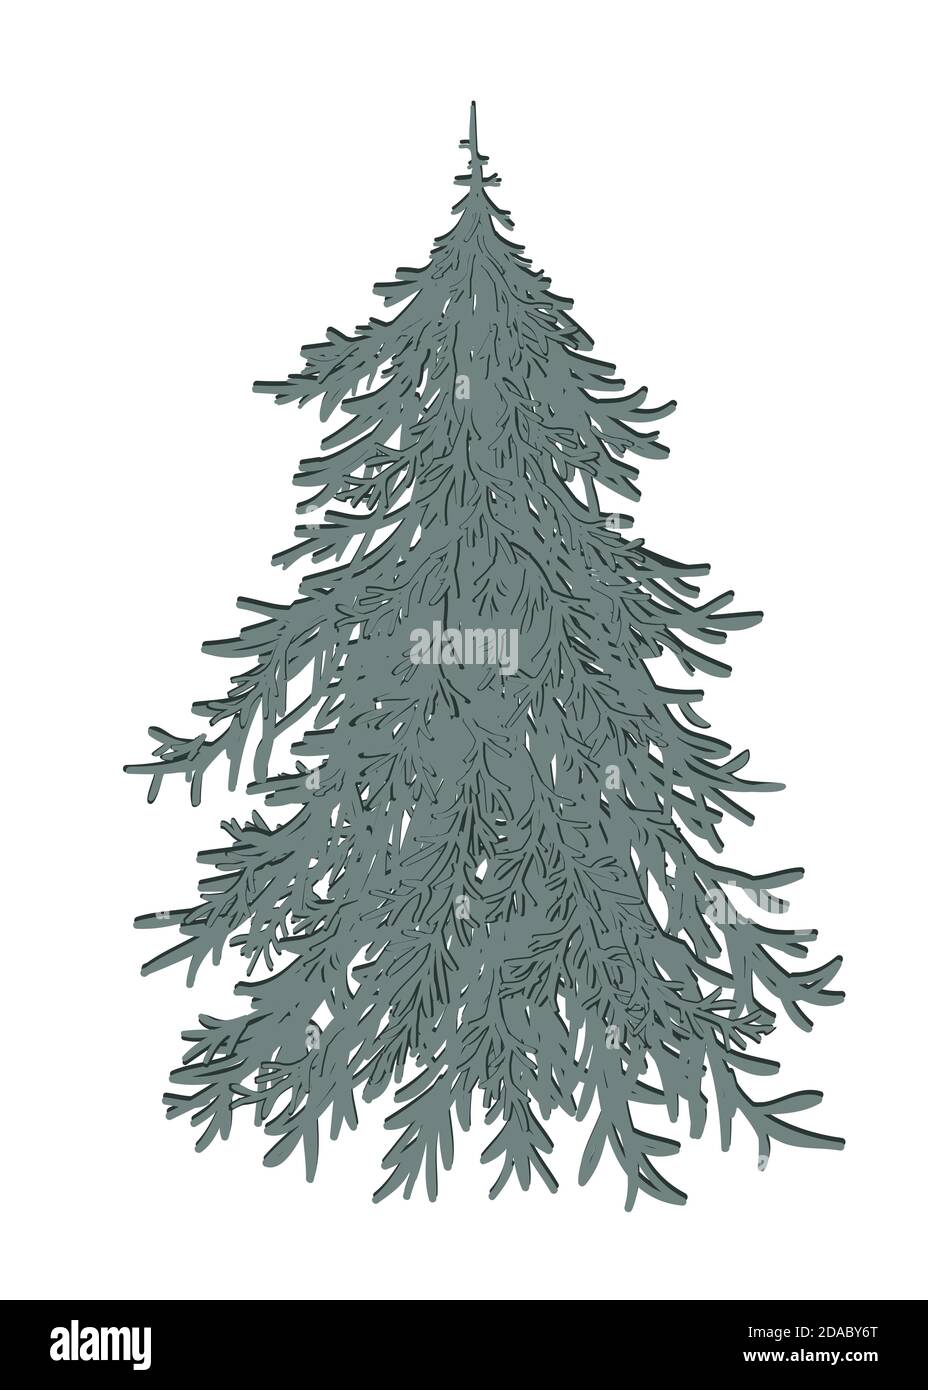 Handgezeichnetes Doodle Frohe Weihnachtsbaum Symbol. Urlaubssymbol. Cartoon Skizze Element, bunte undekorierte Weihnachtsbaum isoliert auf weißem Hintergrund Stock Vektor